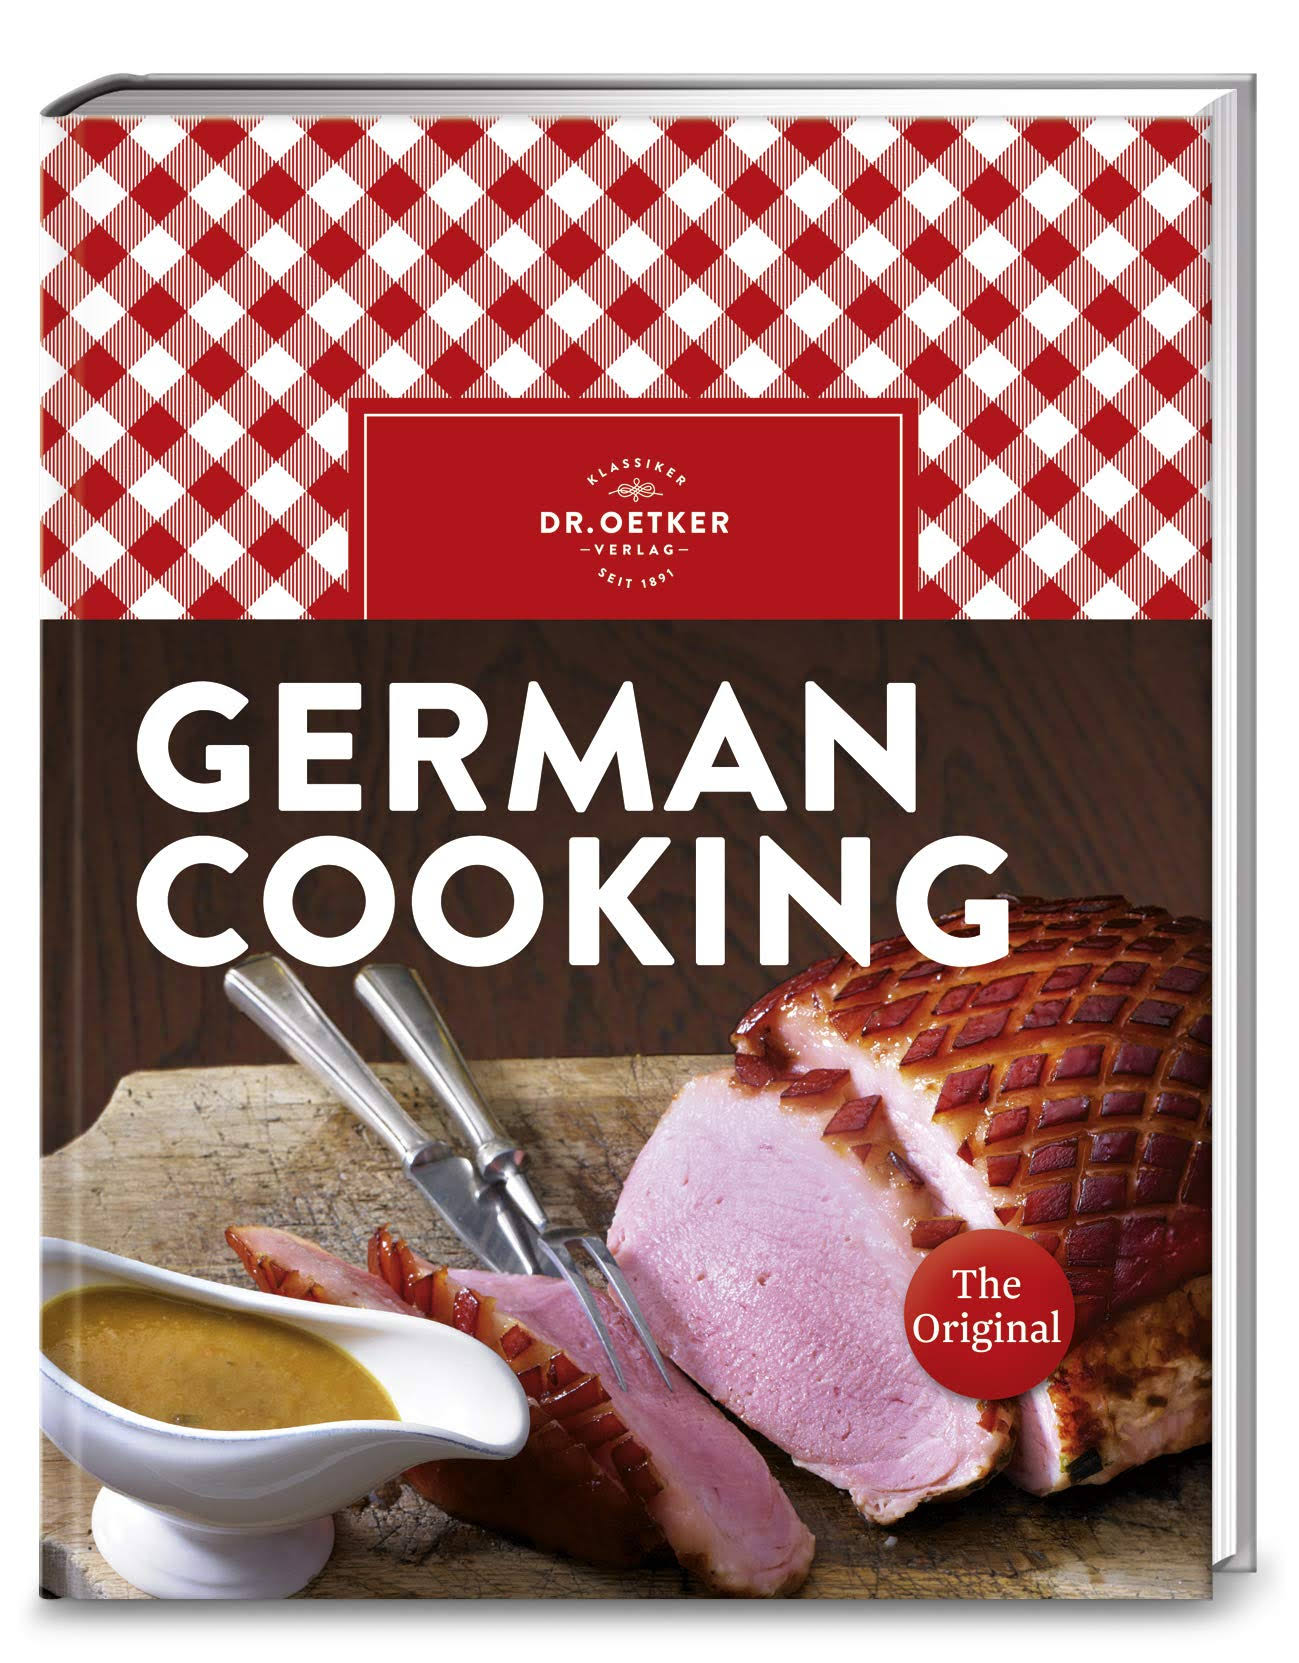 German Cooking by Oetker